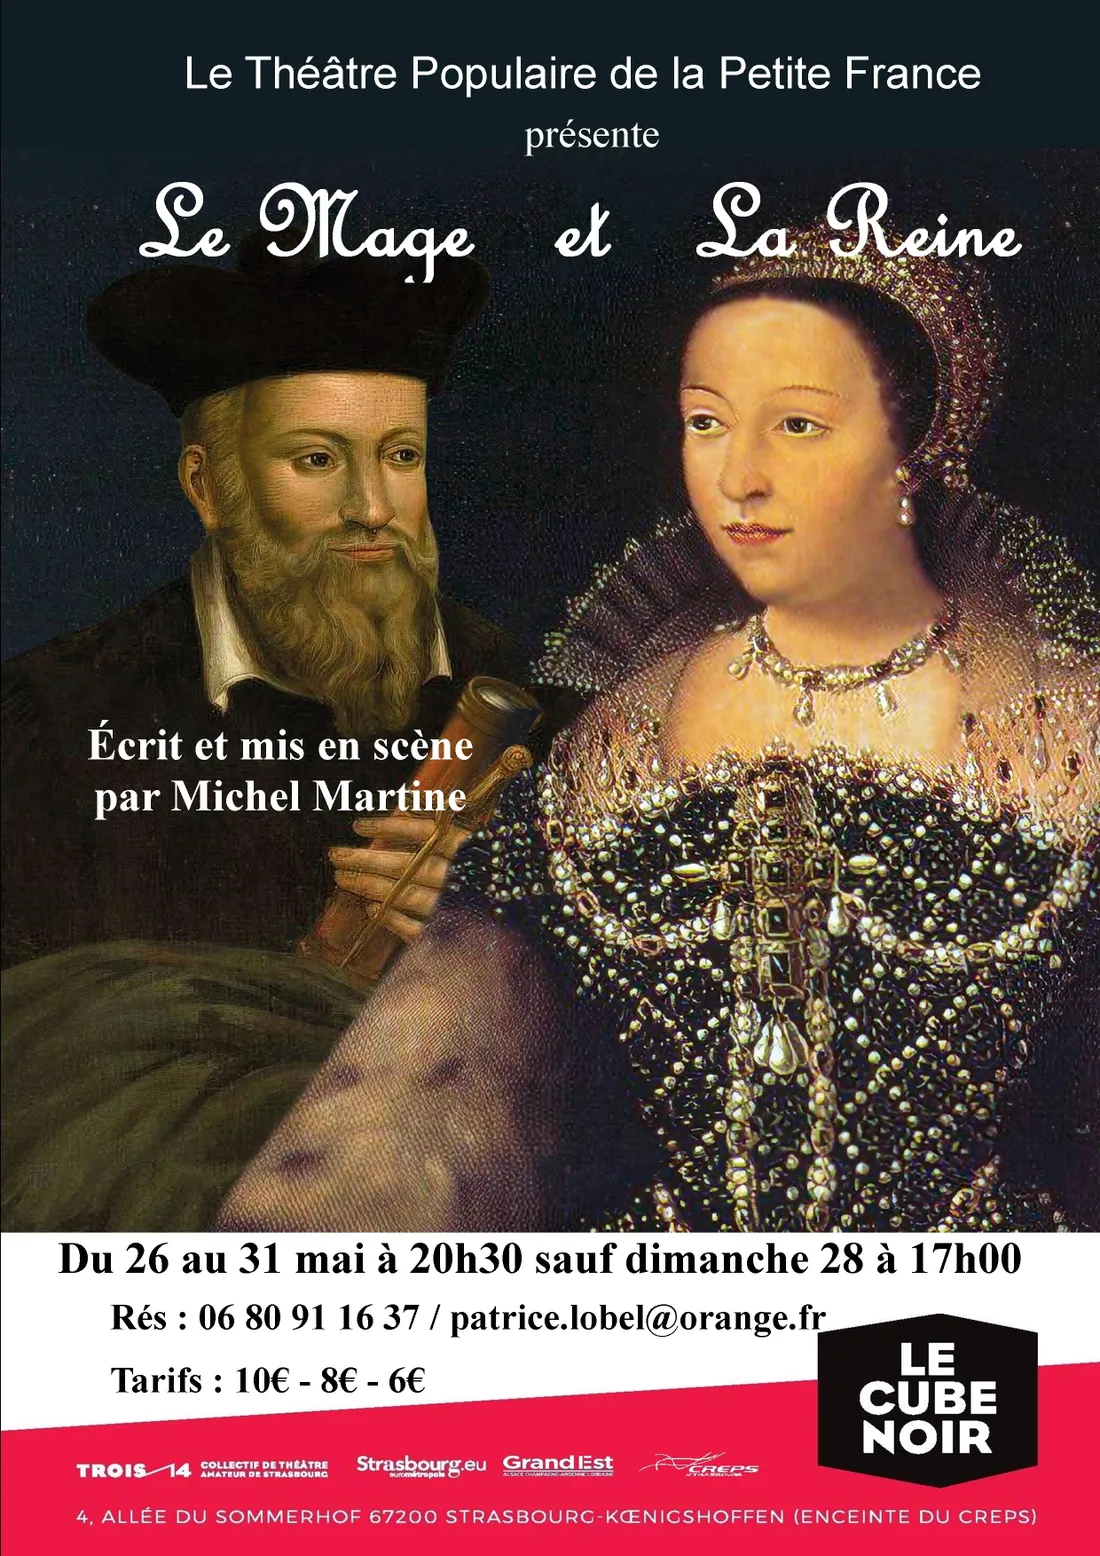 Le Théâtre Populaire de la Petite France présente "Le Mage et La Reine"